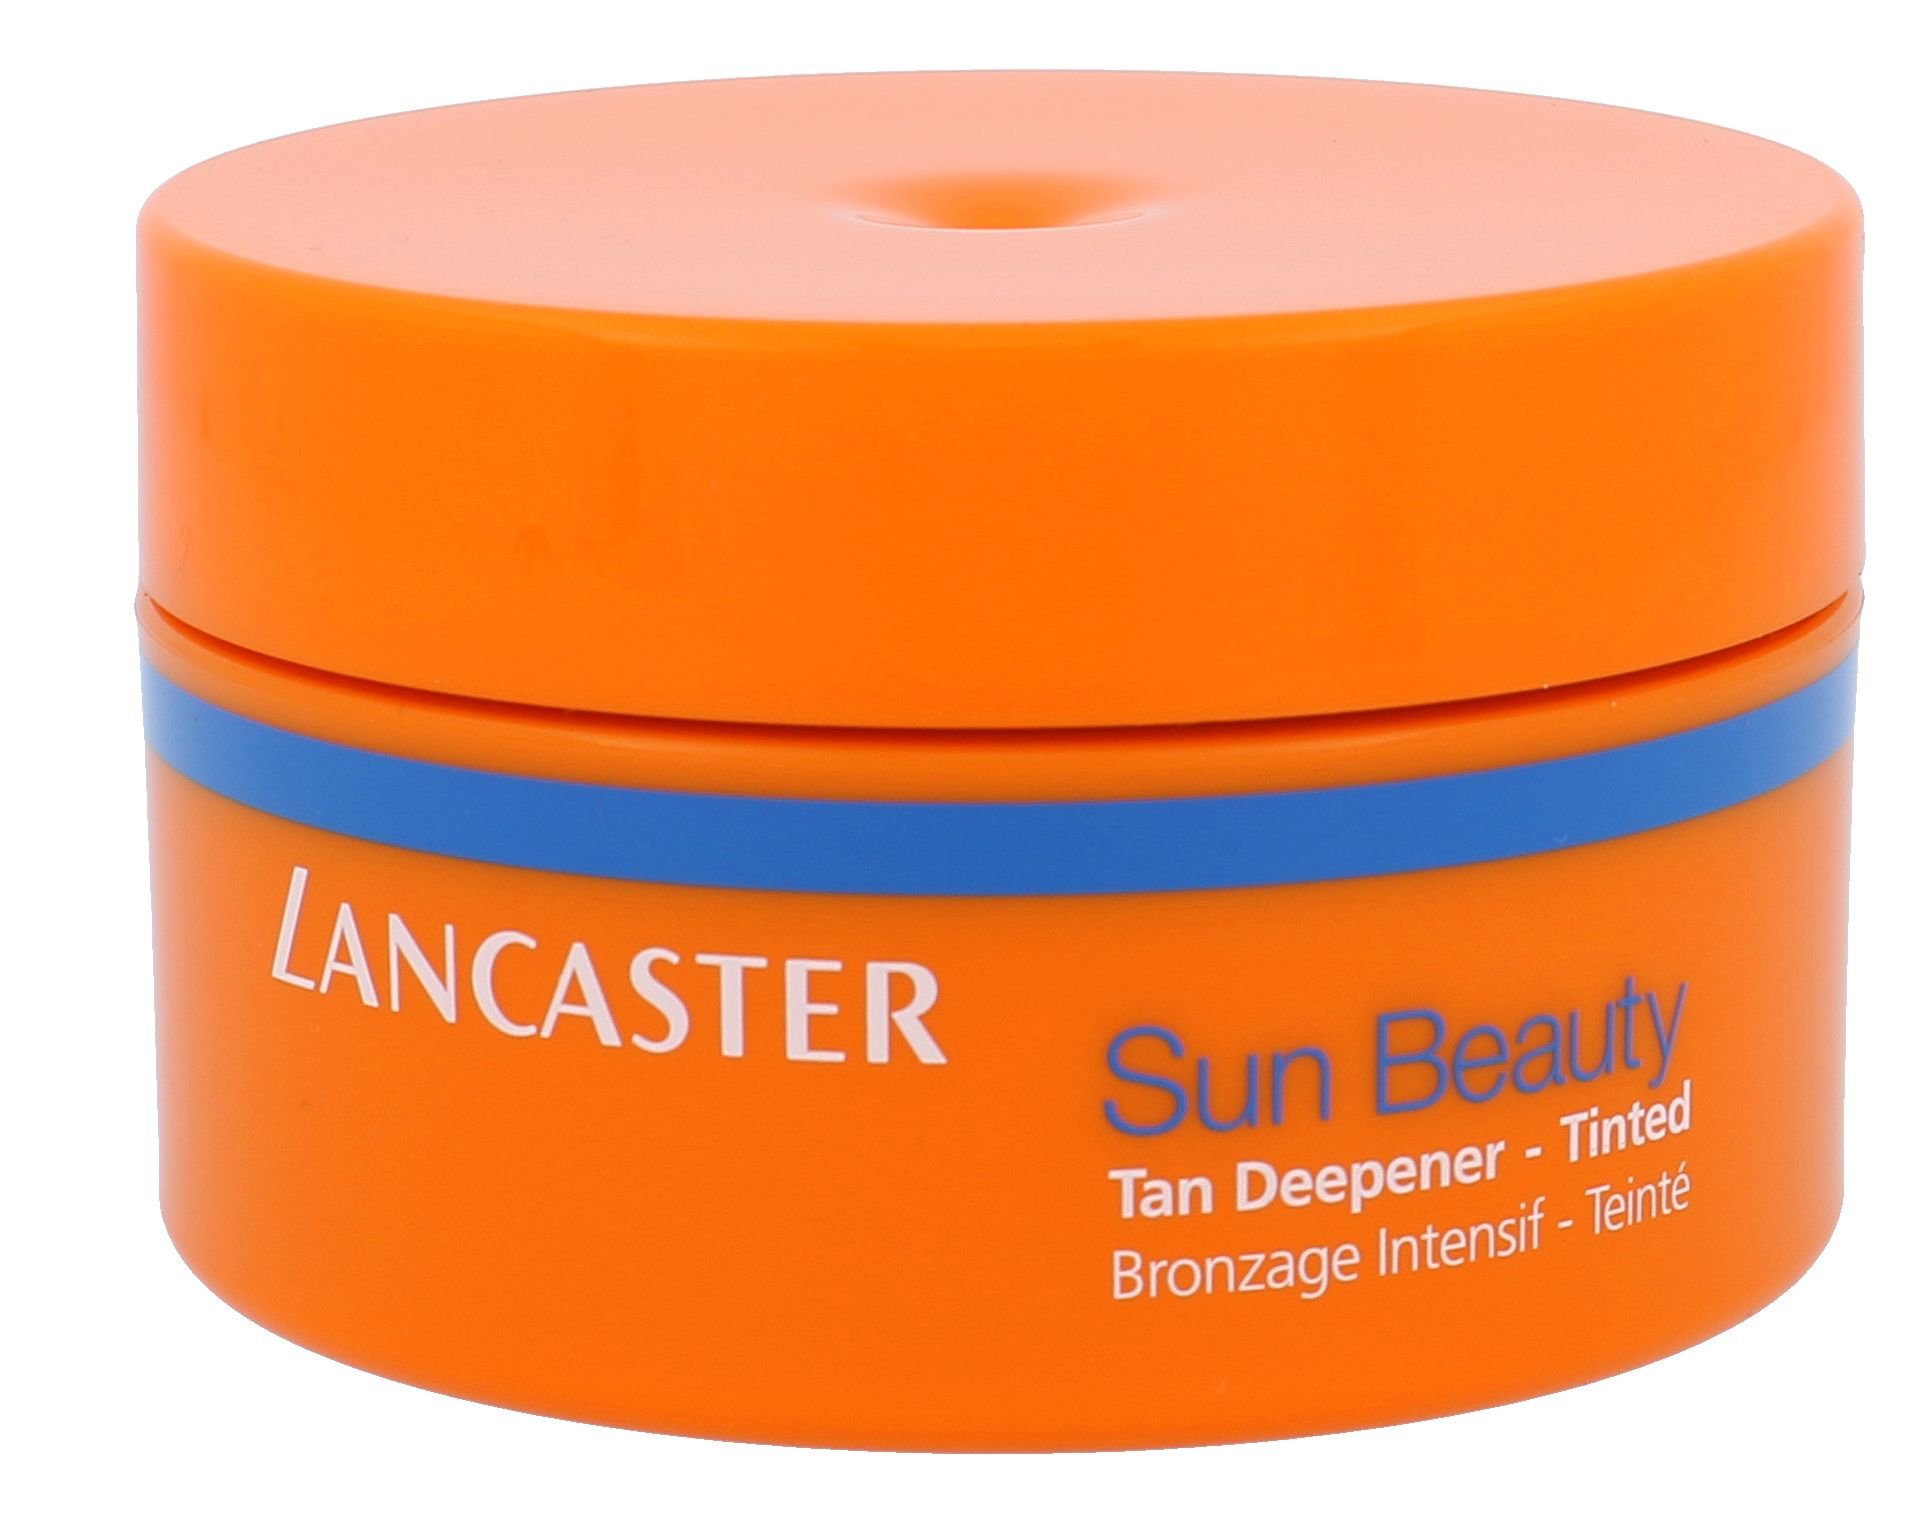 Lancaster Sun Beauty Tan Deeper Tinted savaiminio įdegio kremas